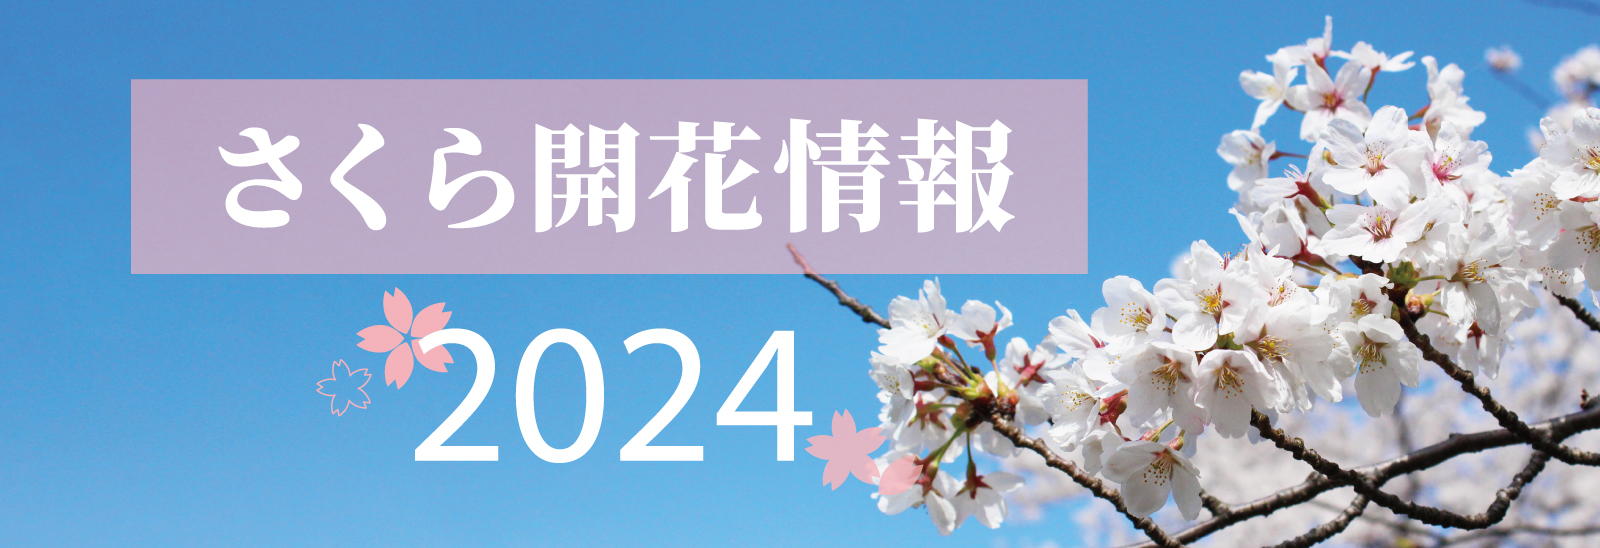 さくら開花情報2024 晴れた青空に桜が映える写真